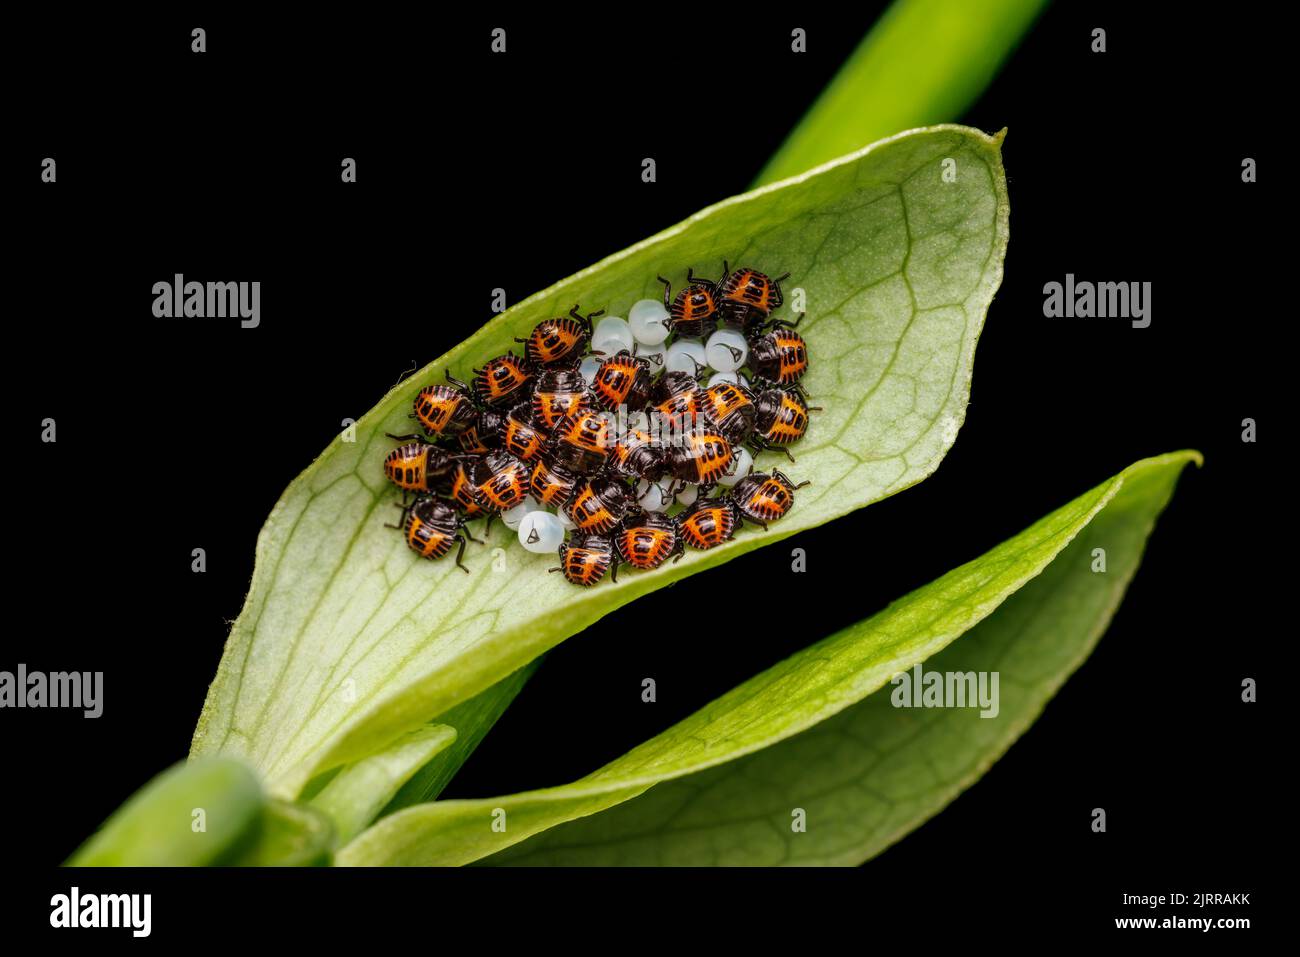 Braune marmorierte stinkende Käfer (Halyomorpha halys) Nymphen, kurz nach dem Auftauchen. Stockfoto